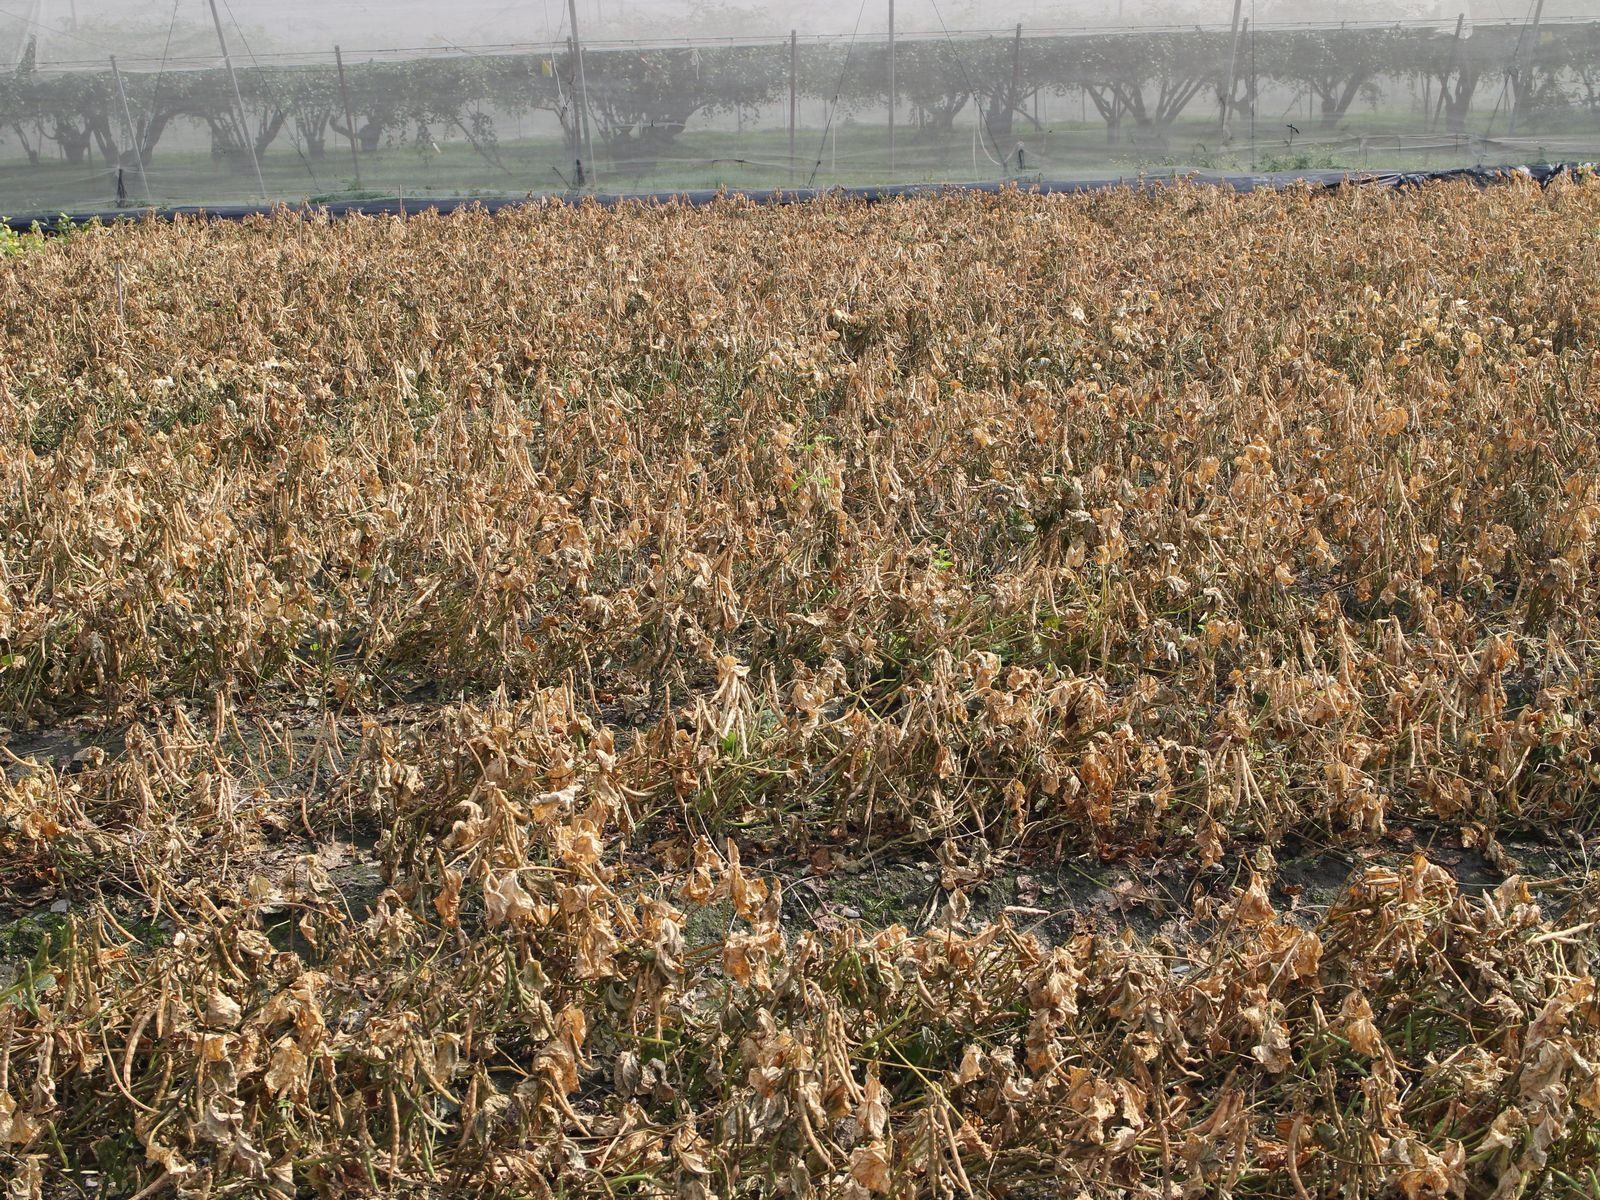 施用氯酸鈉80倍稀釋即可使紅豆植株在採收期達到快速乾燥的效果(施藥後5天)，效果與巴拉刈相當。